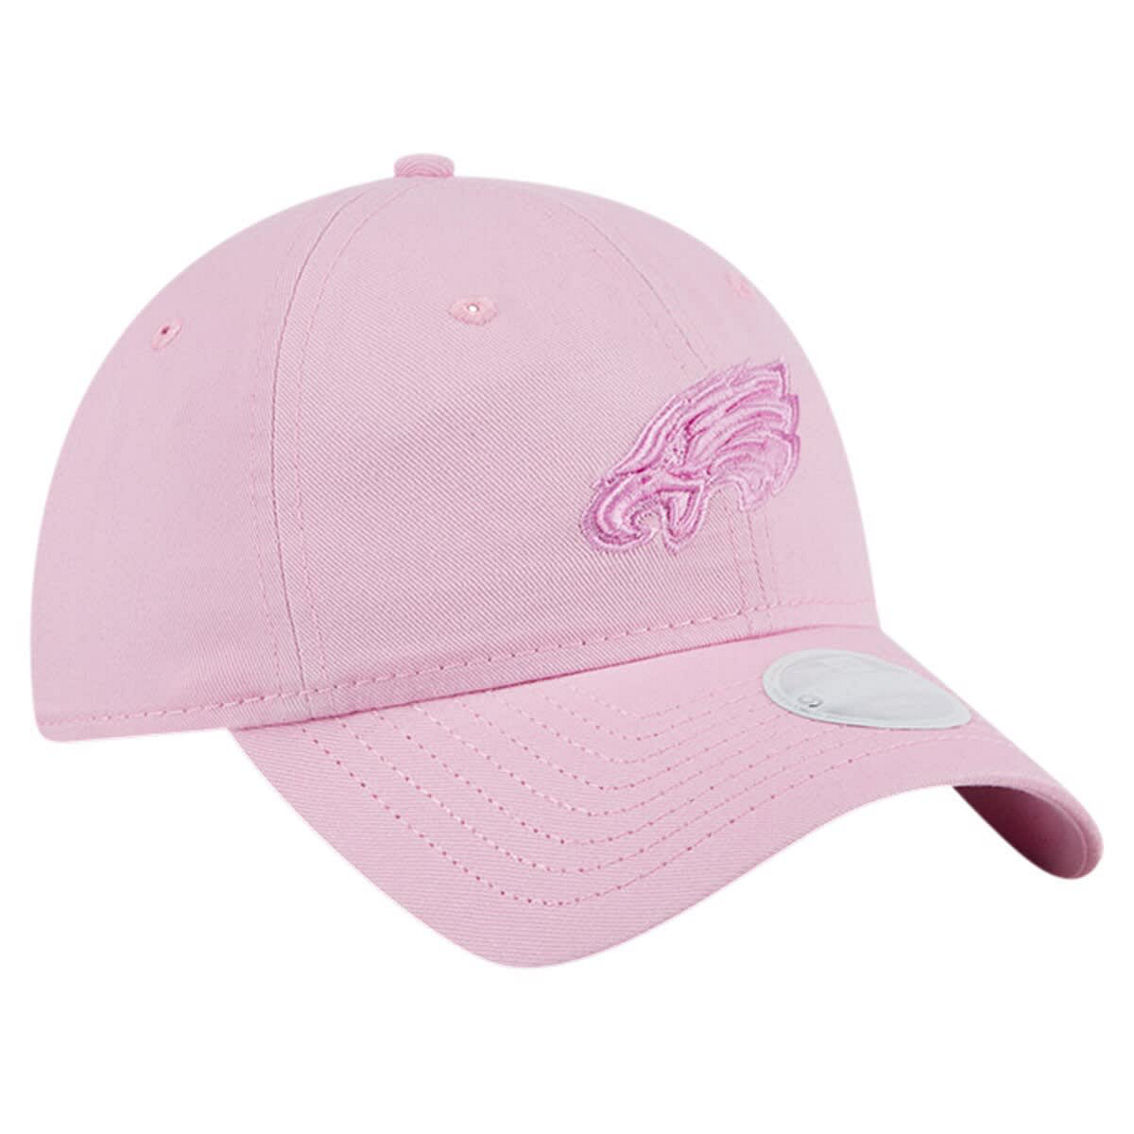 New Era Women's Pink Philadelphia Eagles Color Pack 9TWENTY Adjustable Hat - Image 4 of 4